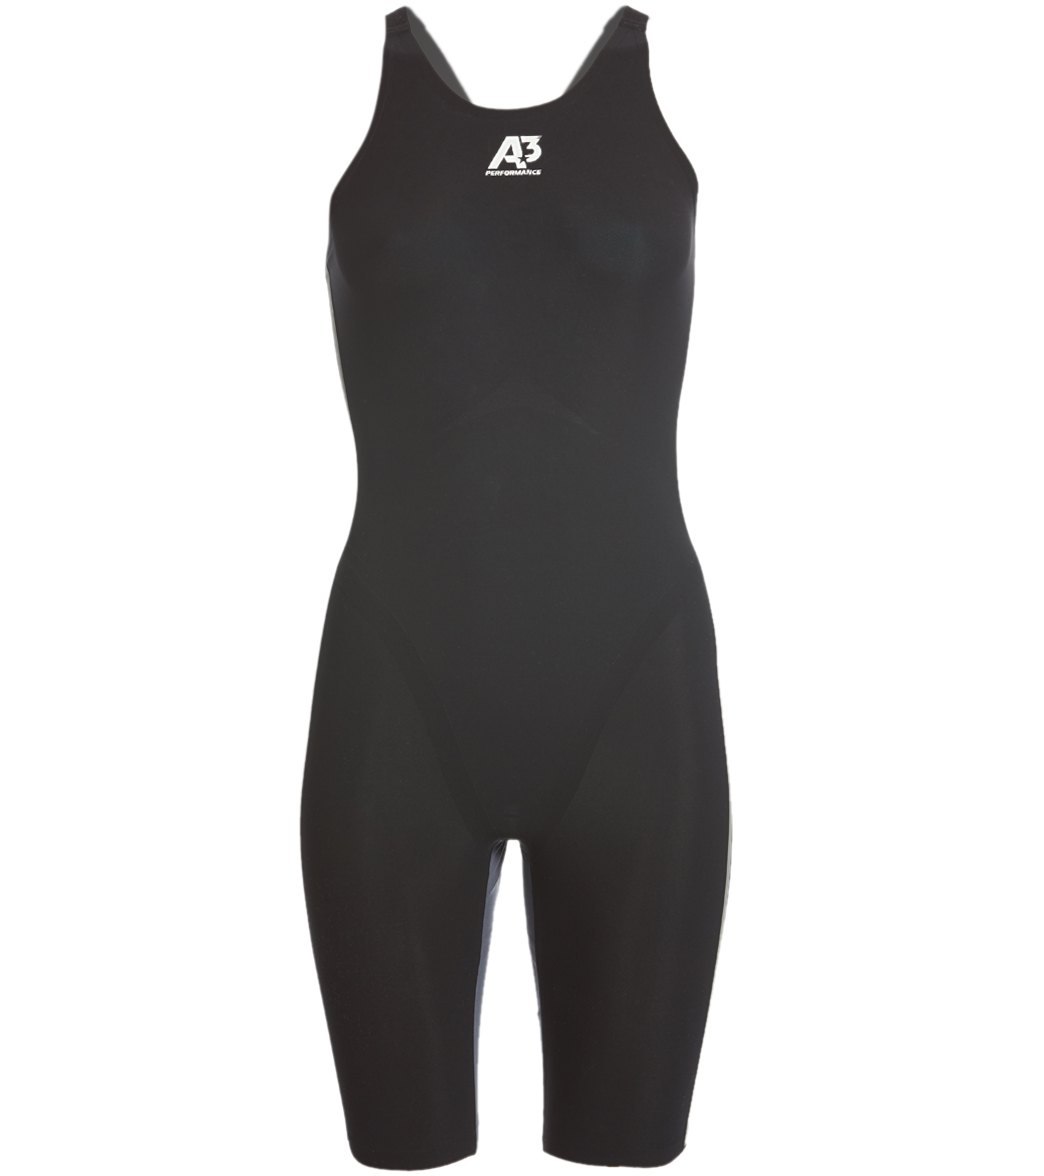 A3 Performance Women's Vici Closed Back Tech Suit Swimsuit - Black 18 Elastane/Polyamide - Swimoutlet.com